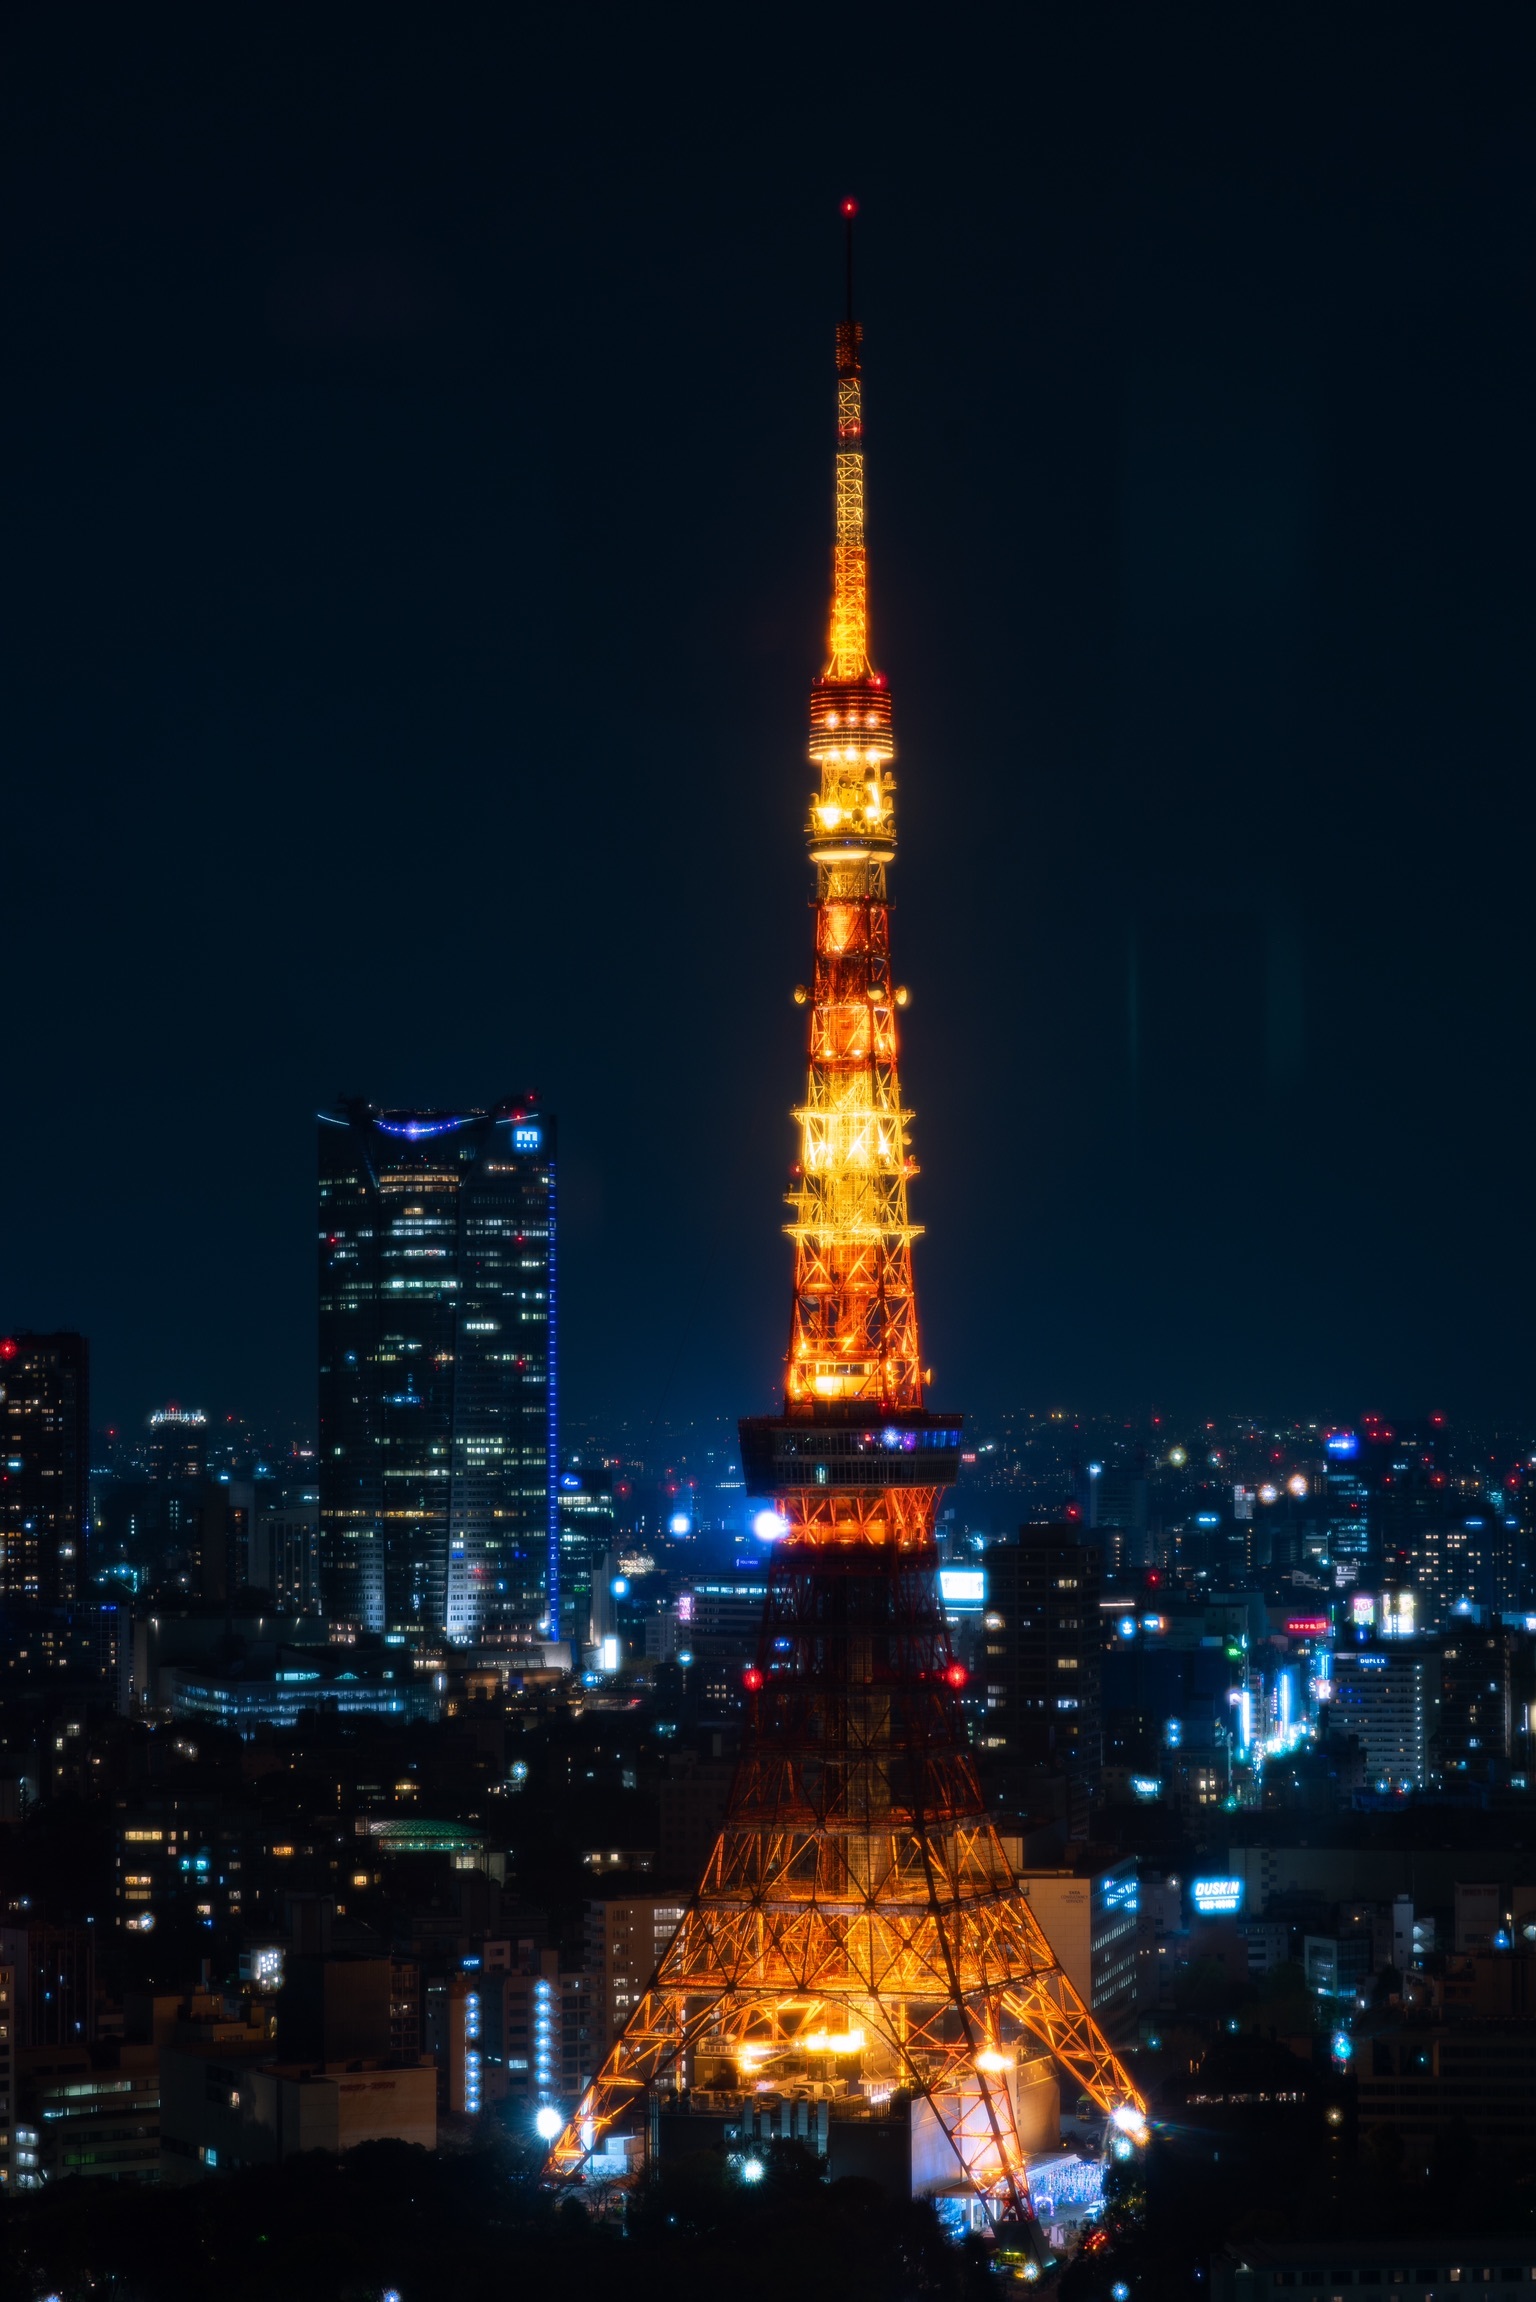 都内最強の夜景撮影スポット 世界貿易センタービル展望台で東京タワーを撮影 してきた話 ソニーのカメラで東京探訪記